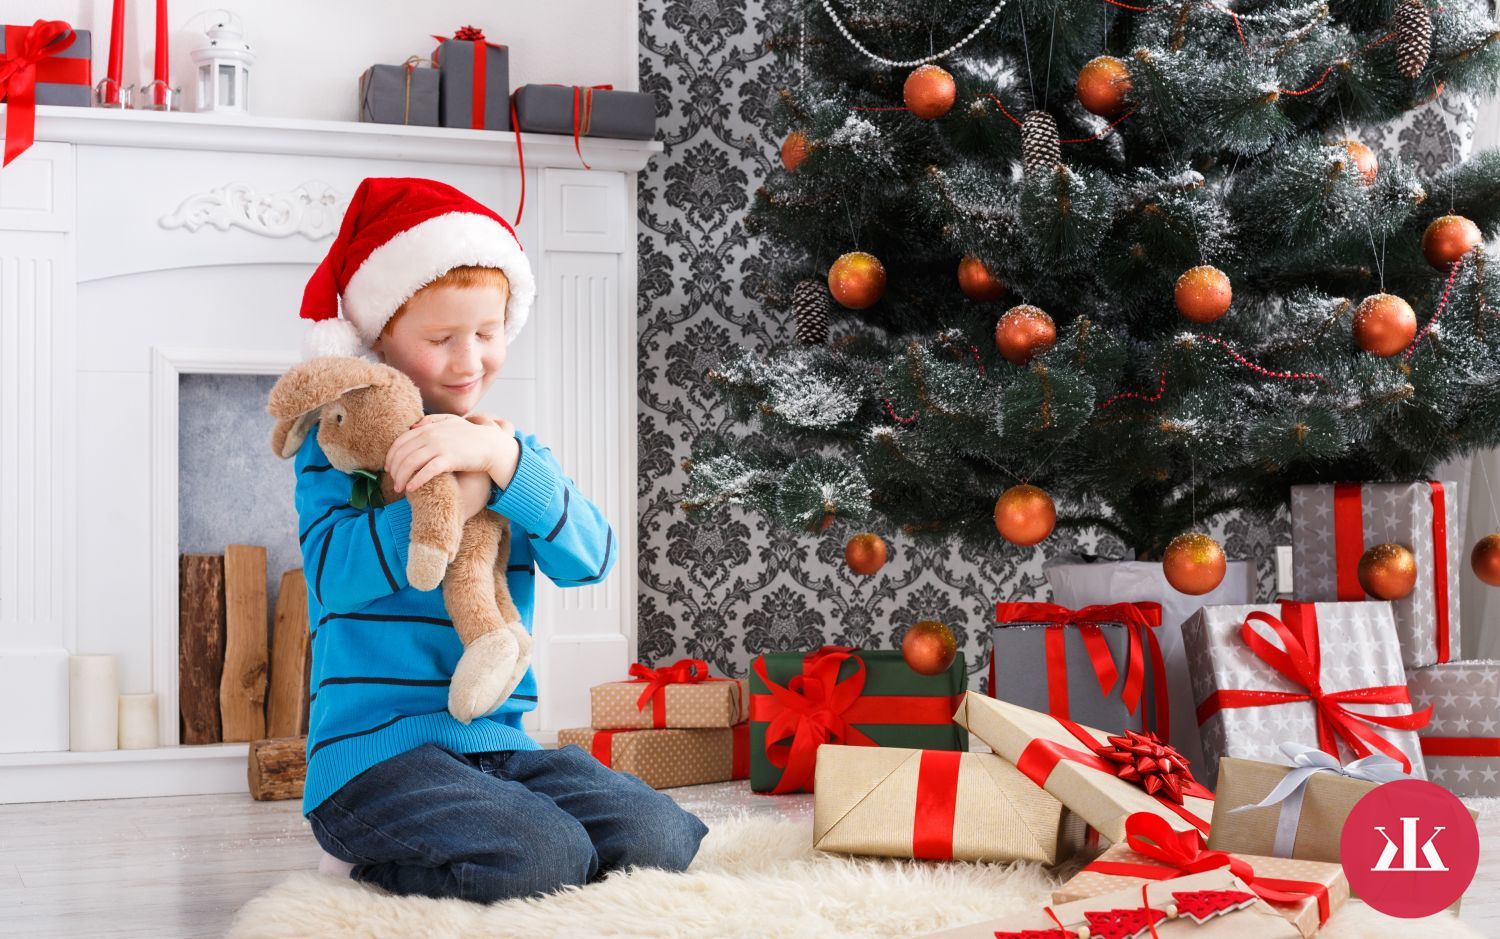 Vhodné darčeky pre deti podľa znamenia (RYBY, BARAN, BÝK, BLÍŽENCI, RAK, LEV)